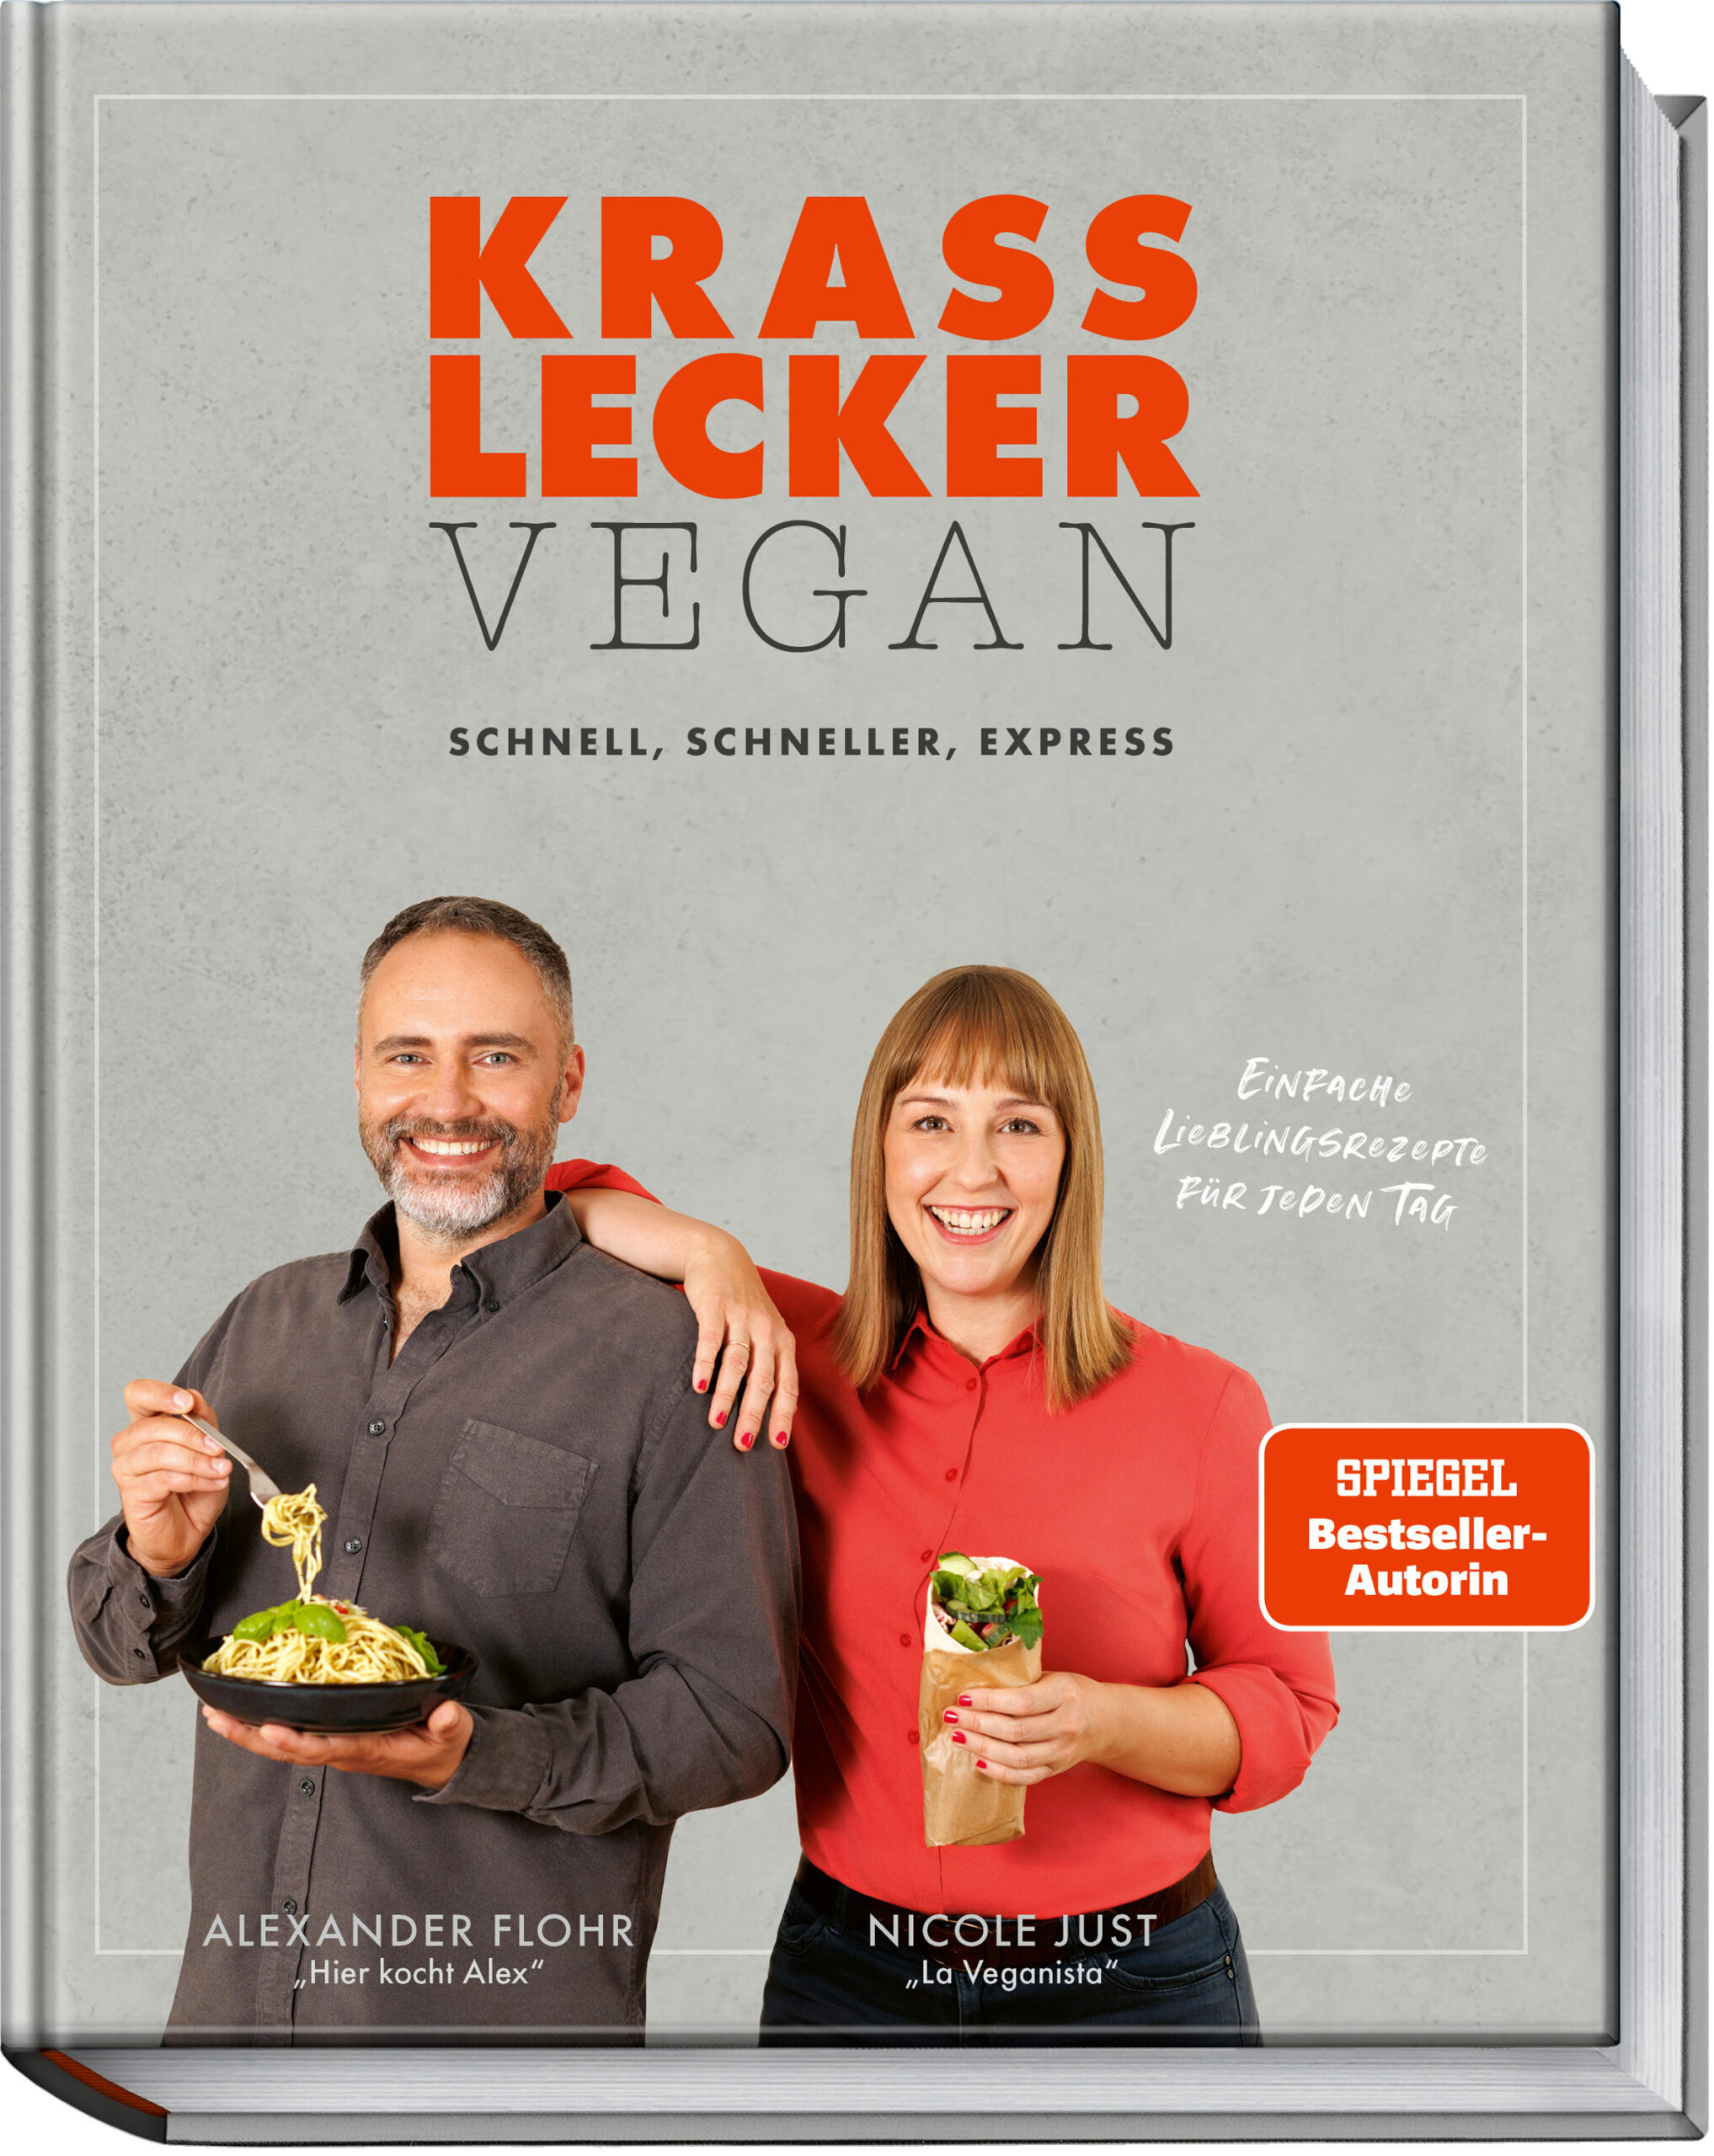 Krass lecker vegan – Unser neues Kochbuch!